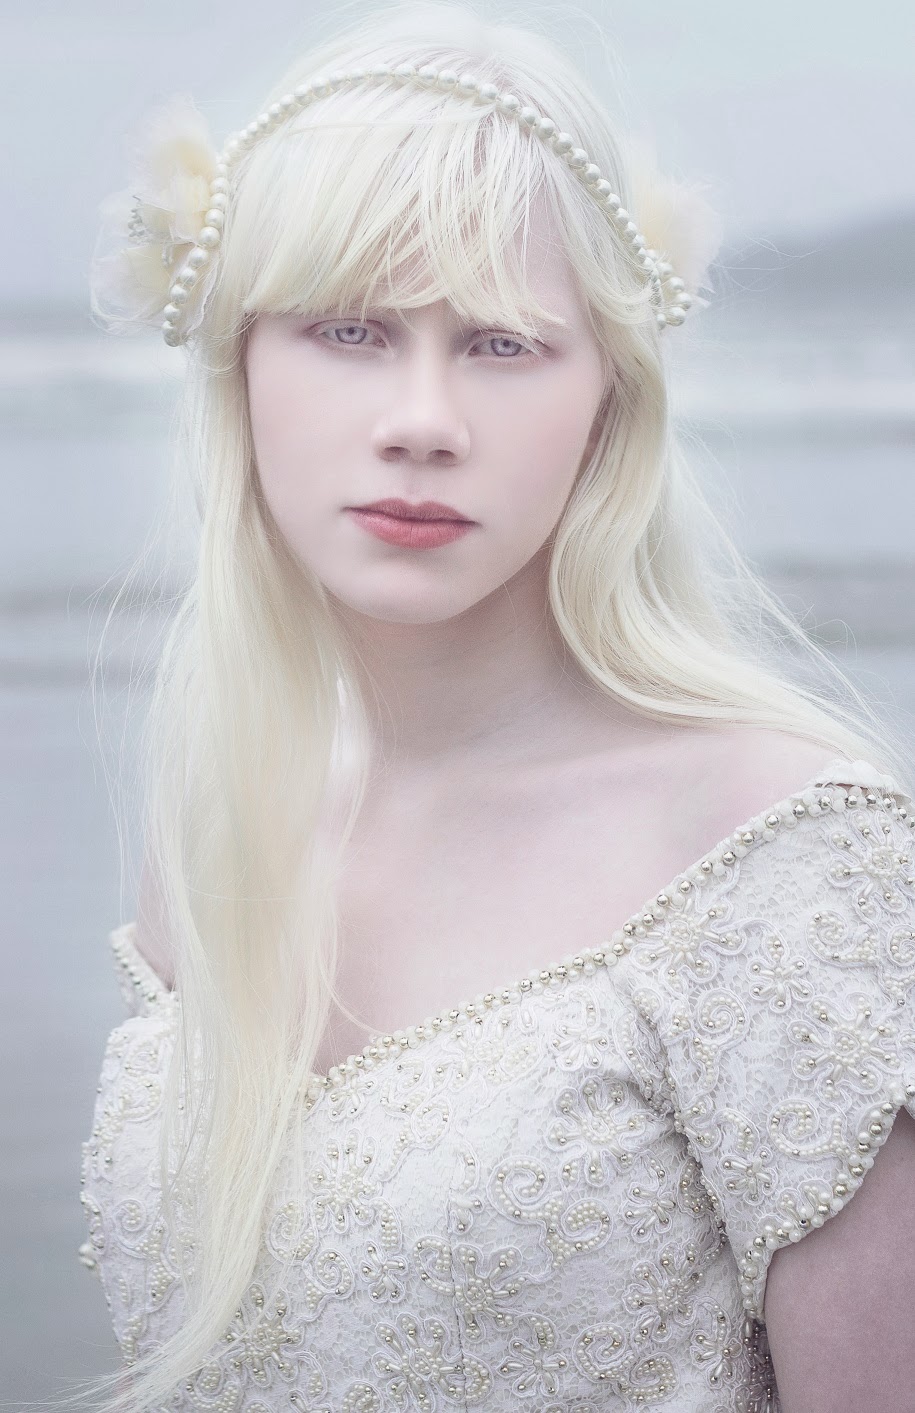 Real Albino Women Porn - Albino Pale Beauty On Pinterest Albino Model AlbinismSexiezPix Web Porn